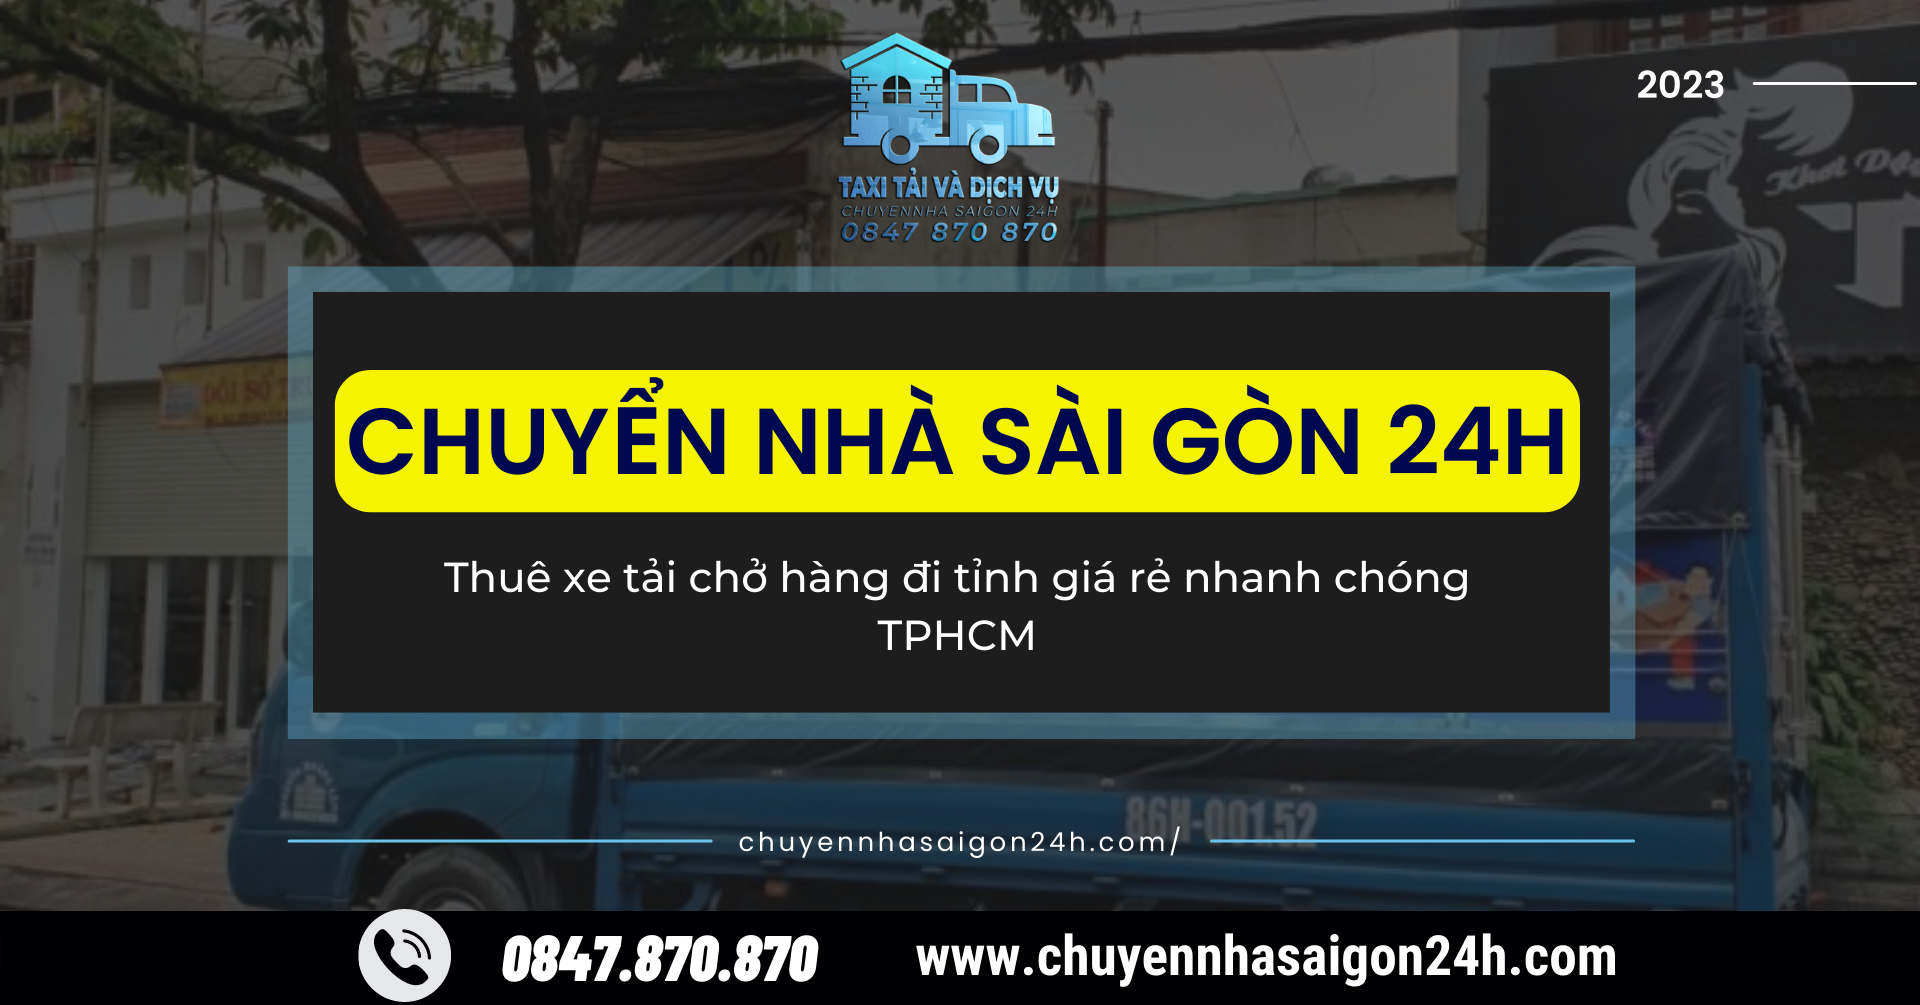 Thuê xe tải chở hàng đi tỉnh giá rẻ nhanh chóng TPHCM | Dịch Vụ Chuyển Nhà Sài Gòn 24H